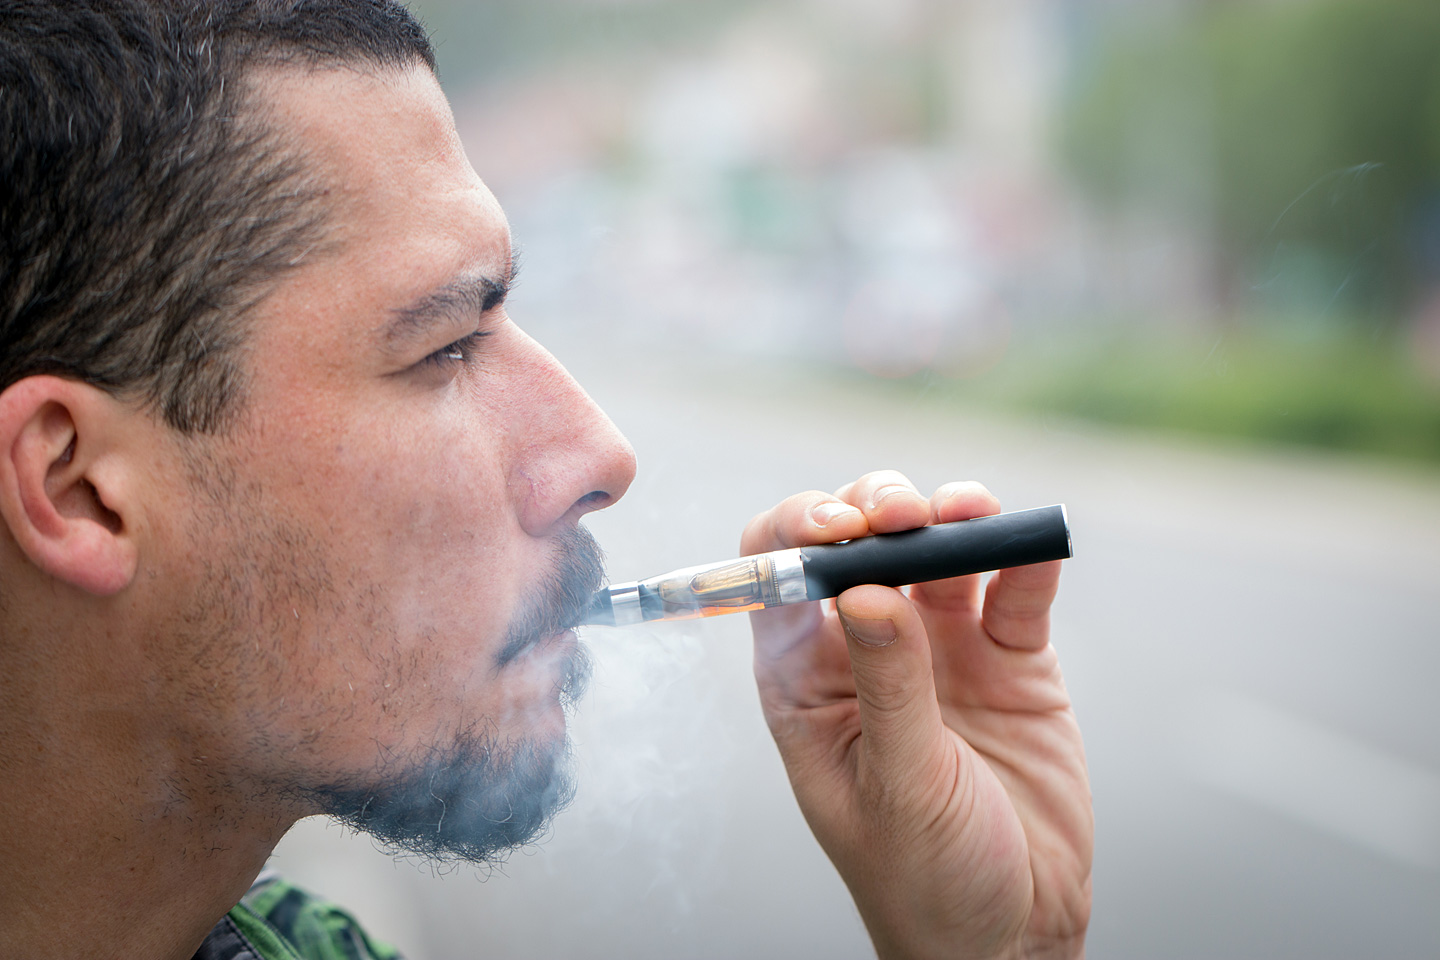 Ein junger Mann raucht eine E-Zigarette.